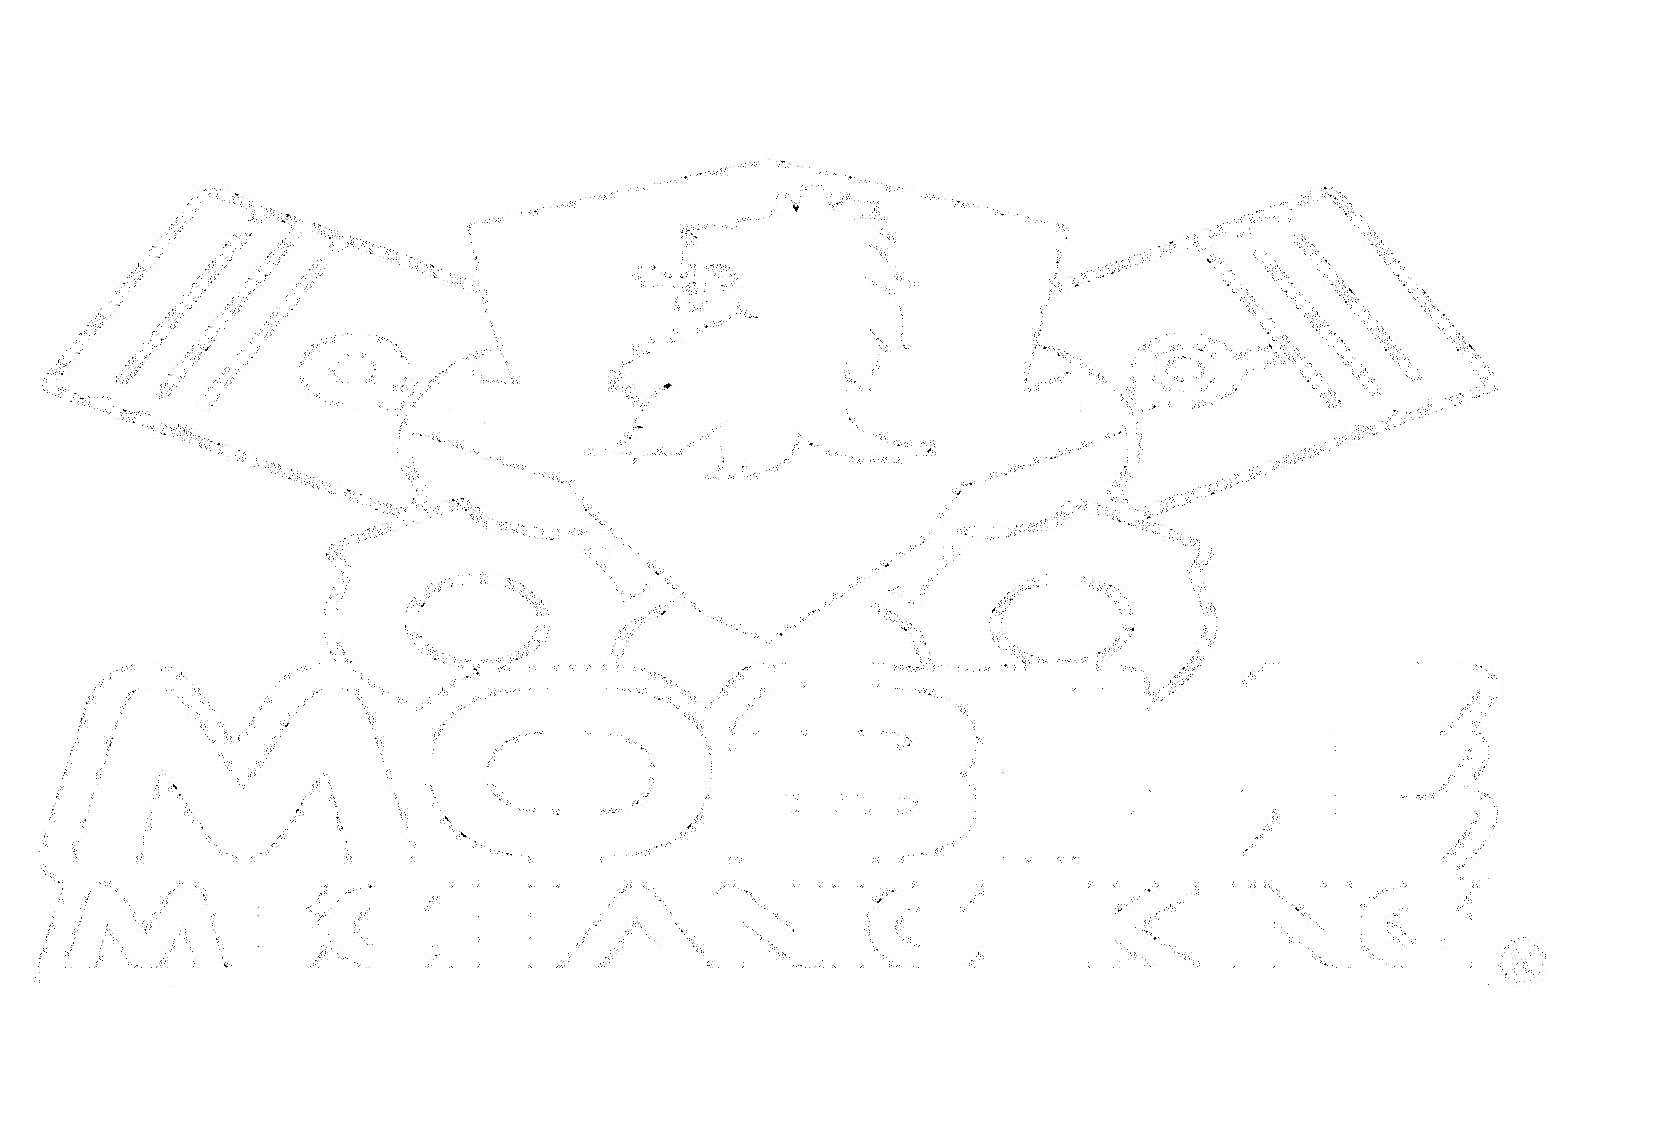 Mobile Mechanic King